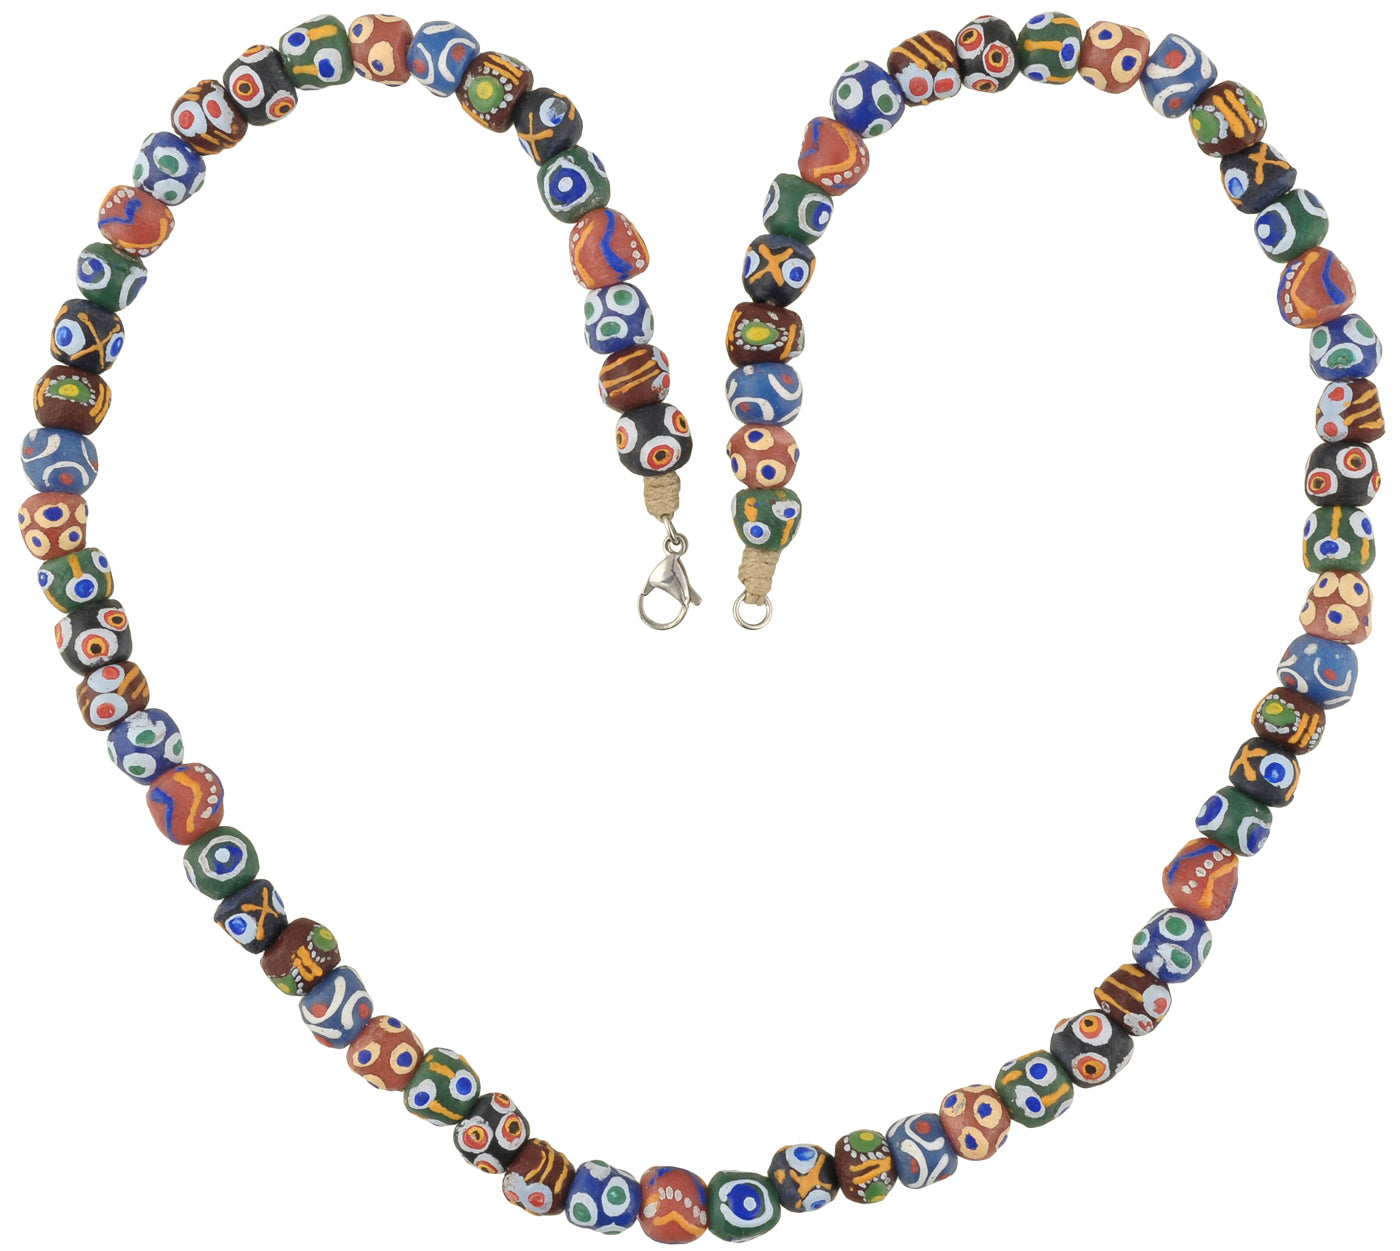 Handgefertigte Halskette aus recycelten Glasperlen, Schmuck Krobo Ghana Afrika - Tribalgh